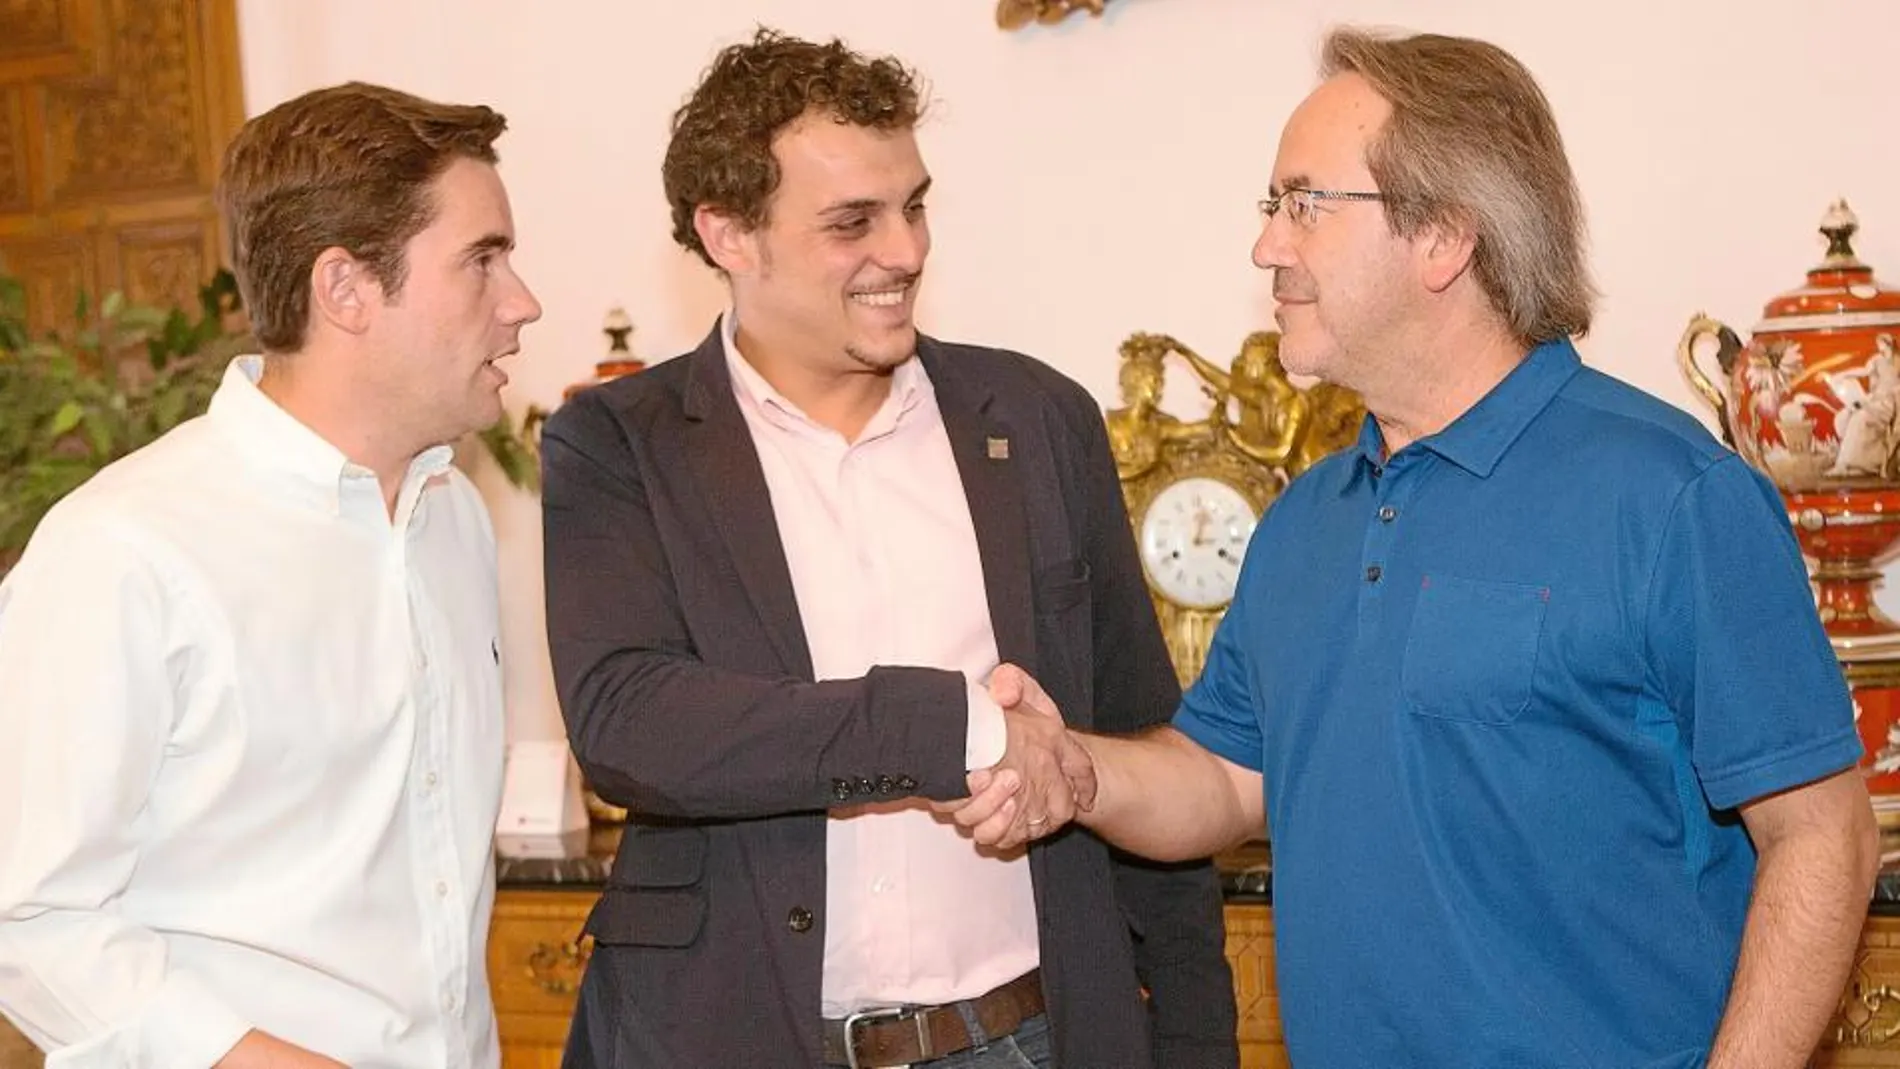 Los alcaldes de Zamora y Toro, Francisco Guarido y Tomás del Bien, se reúnen para sacar adelante iniciativas conjuntas de cara a Las Edades